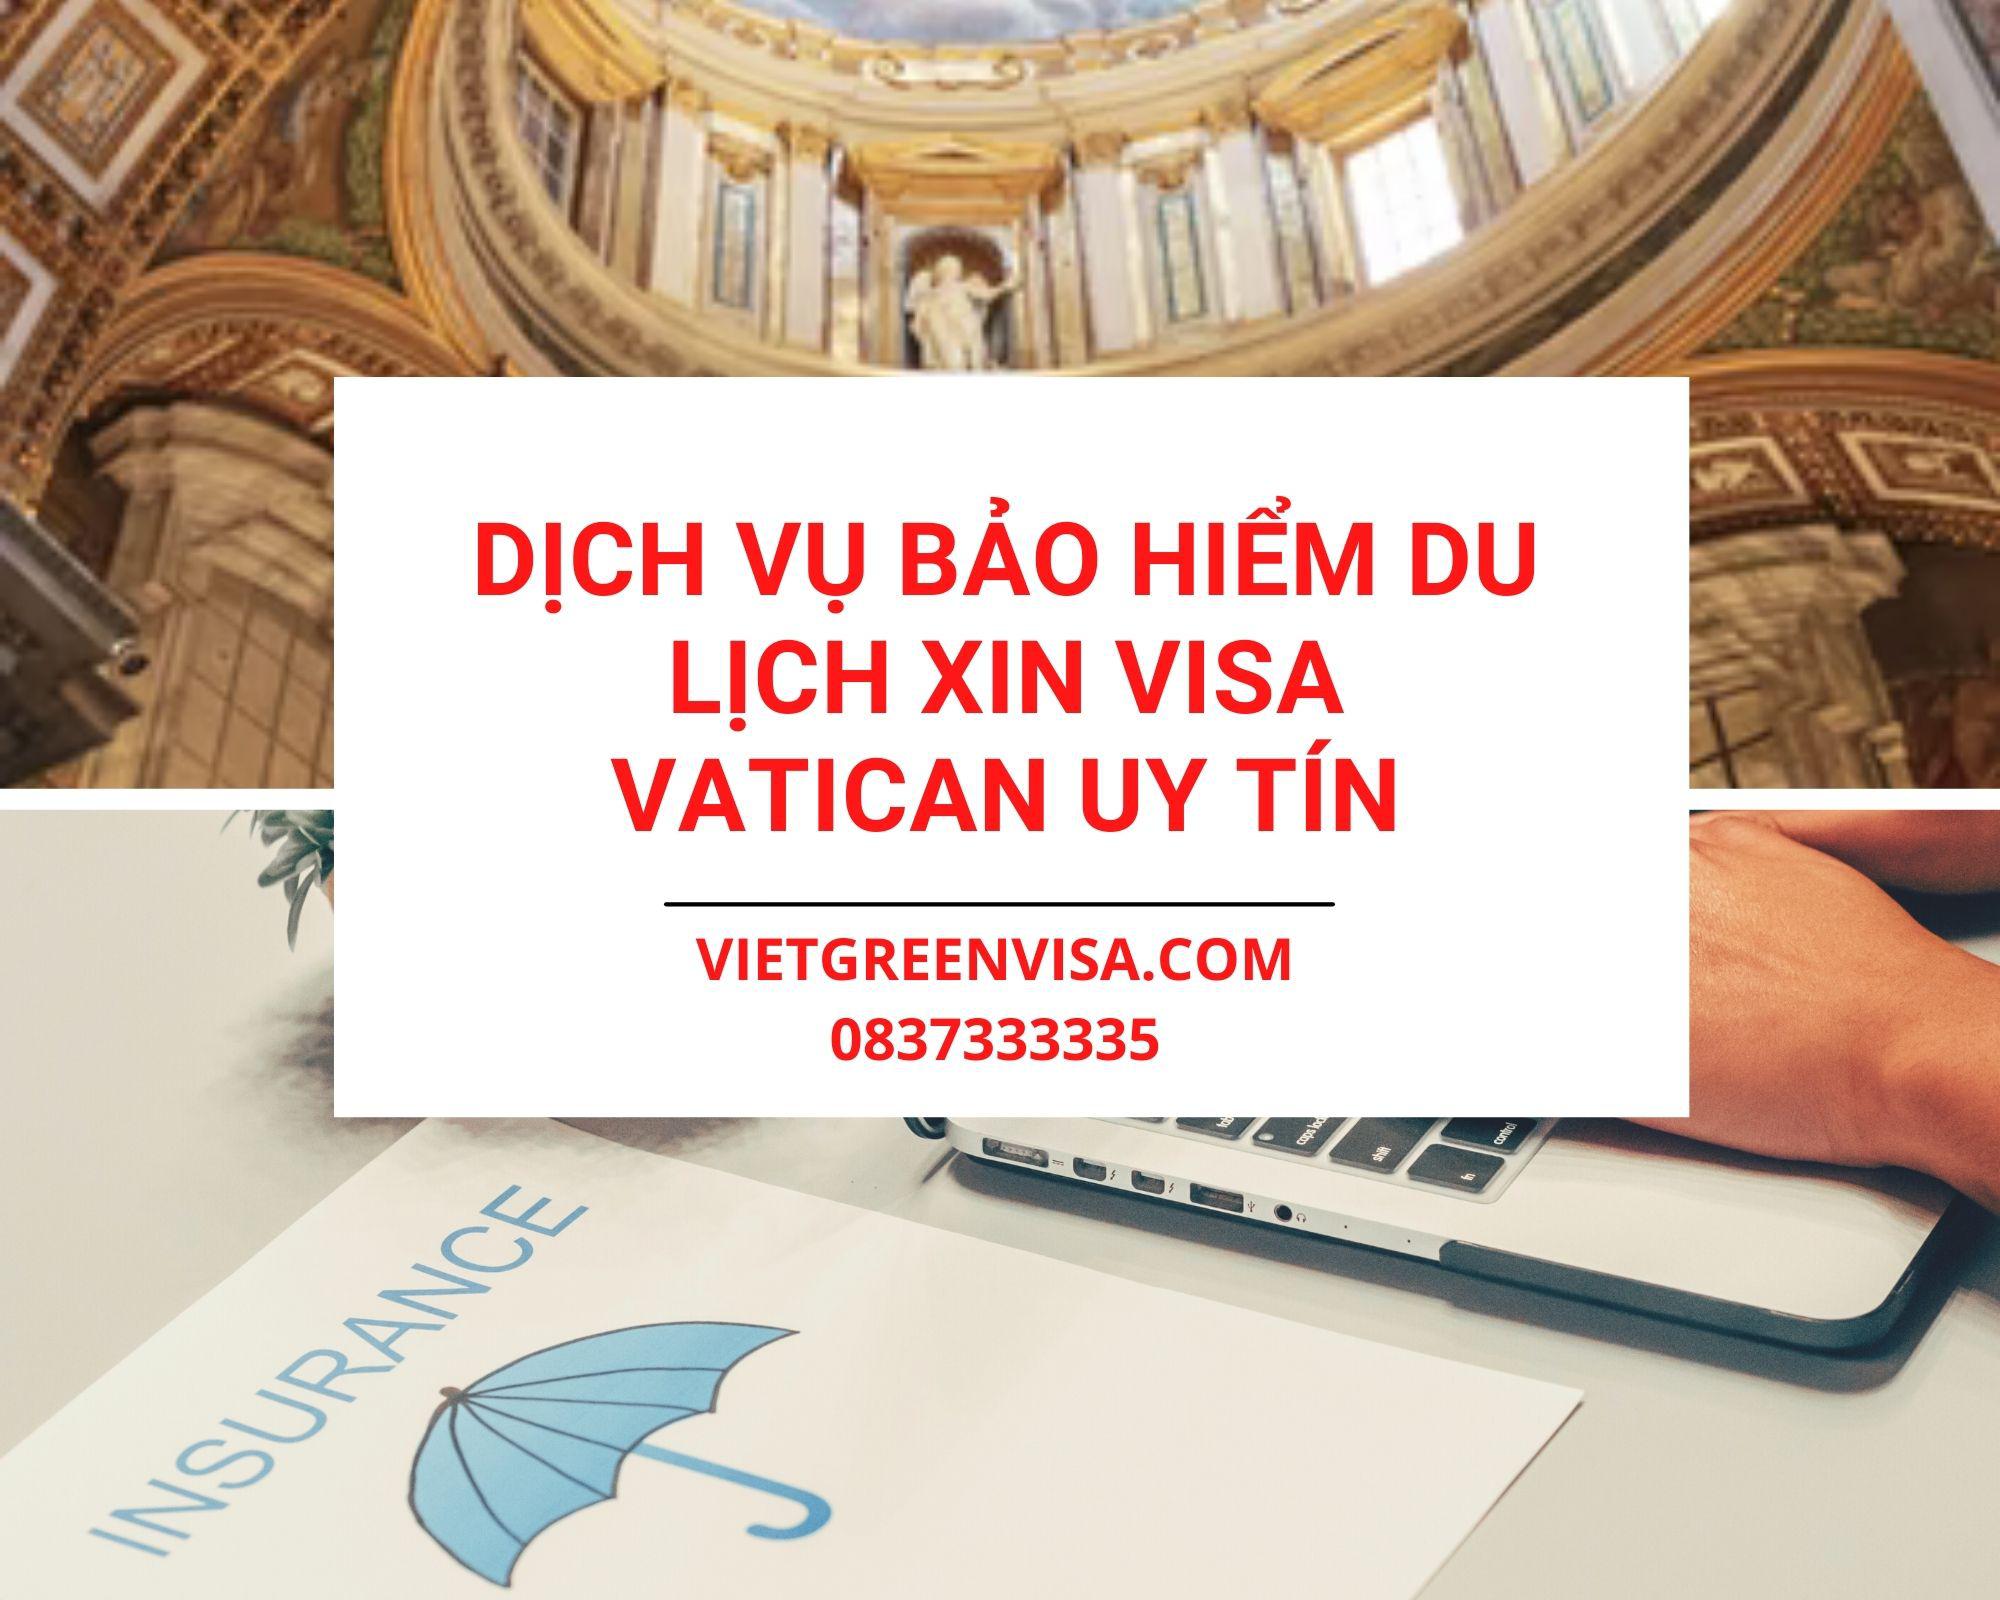 Dịch vụ bảo hiểm du lịch xin visa Vatican giá tốt nhất